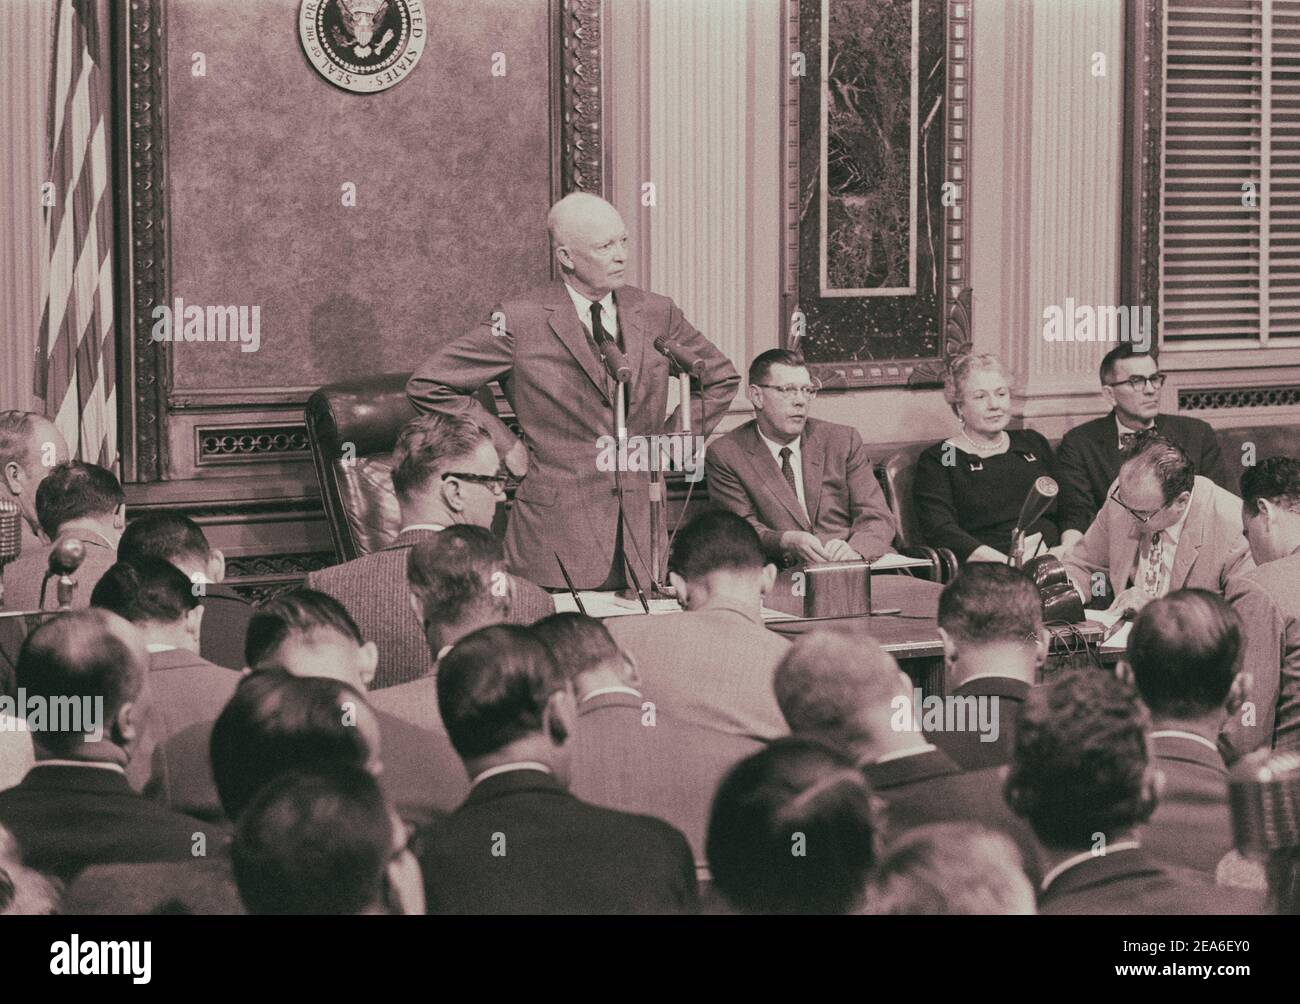 Le Président Dwight D. Eisenhower debout à une table à la Maison Blanche, lors d'une conférence de presse à la Maison Blanche, Washington, D.C., États-Unis. Octobre 9, Banque D'Images